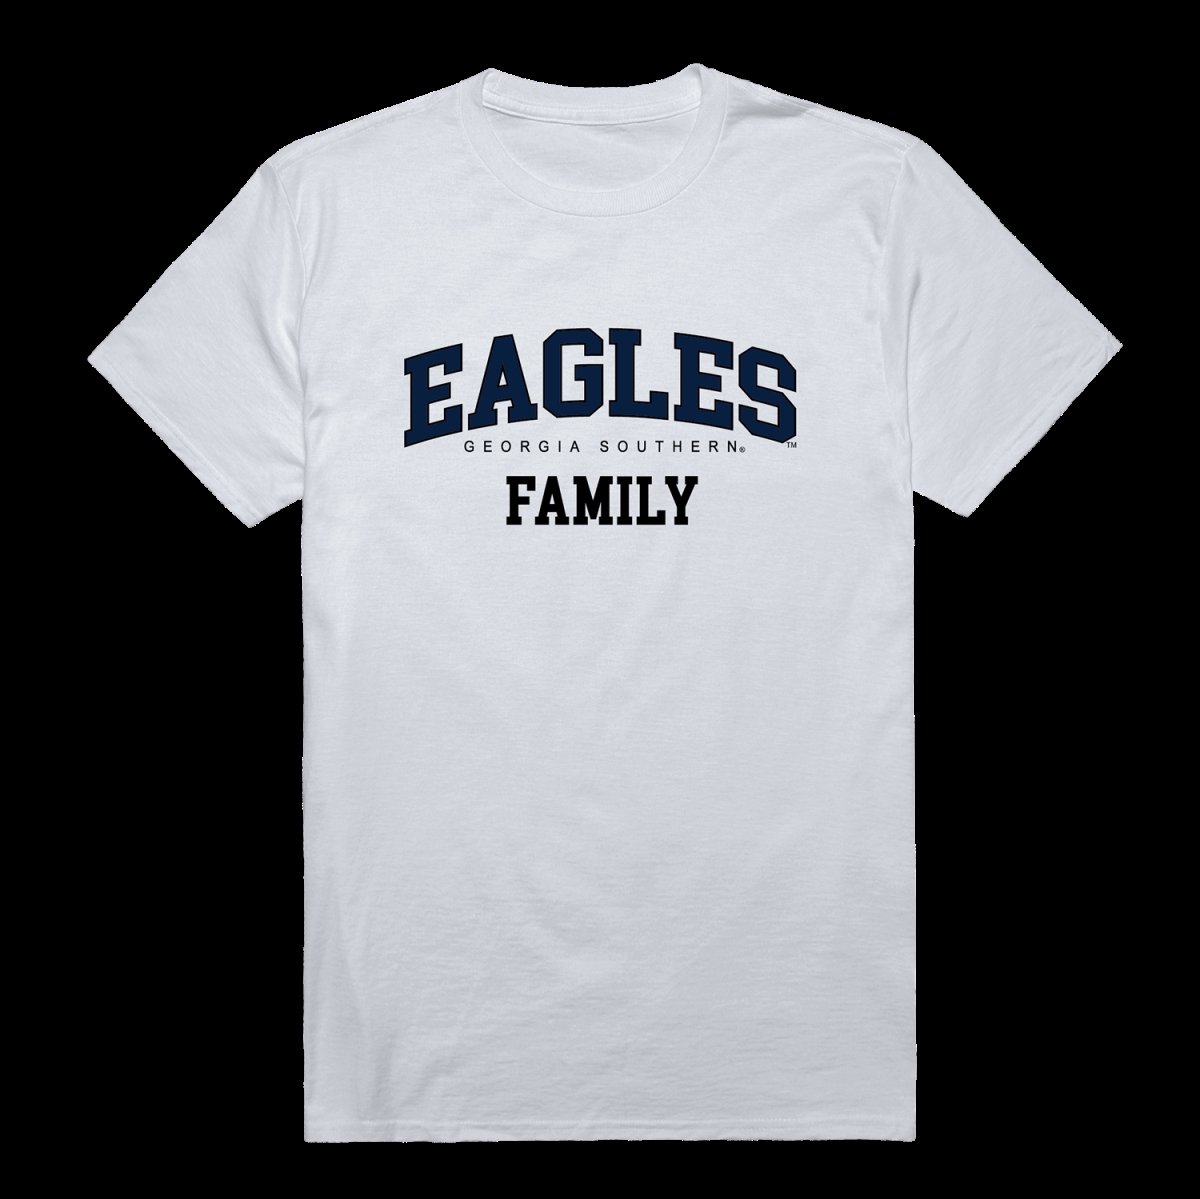 W Republic 571-718-WHT-02 Georgia Southern University Eagles Family T-Shirt&#44; White - Medium